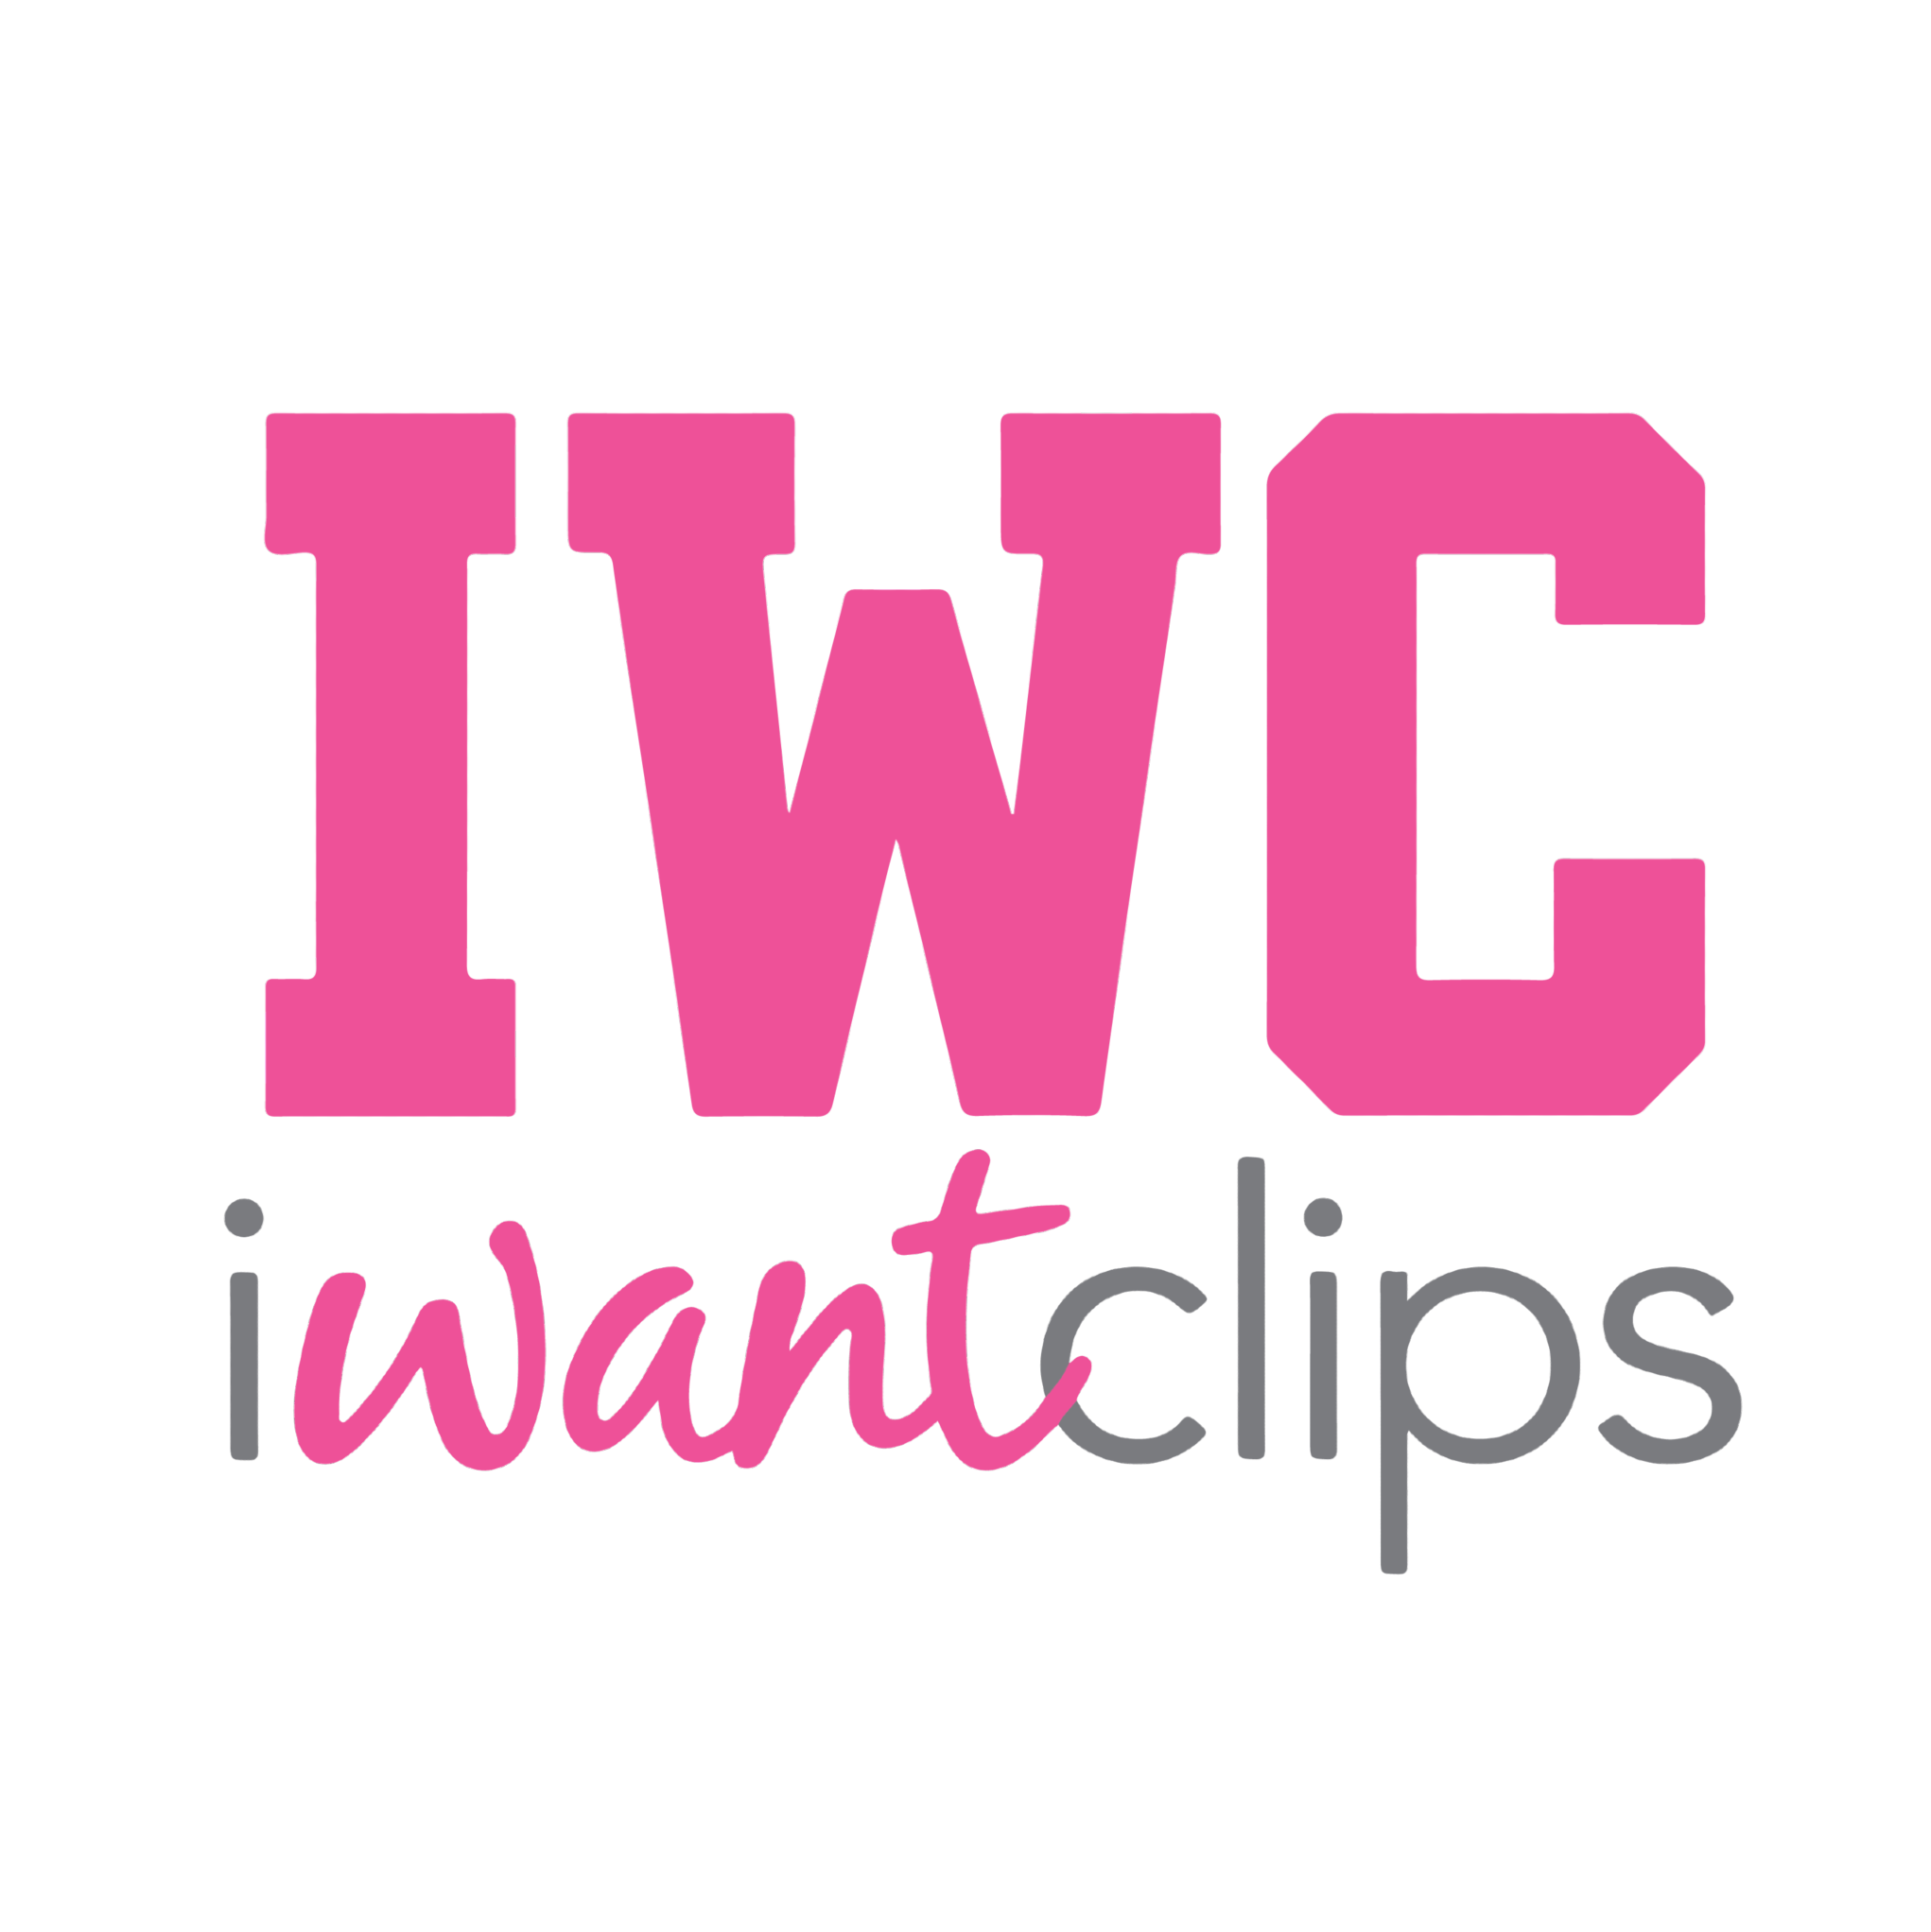 IWantClips